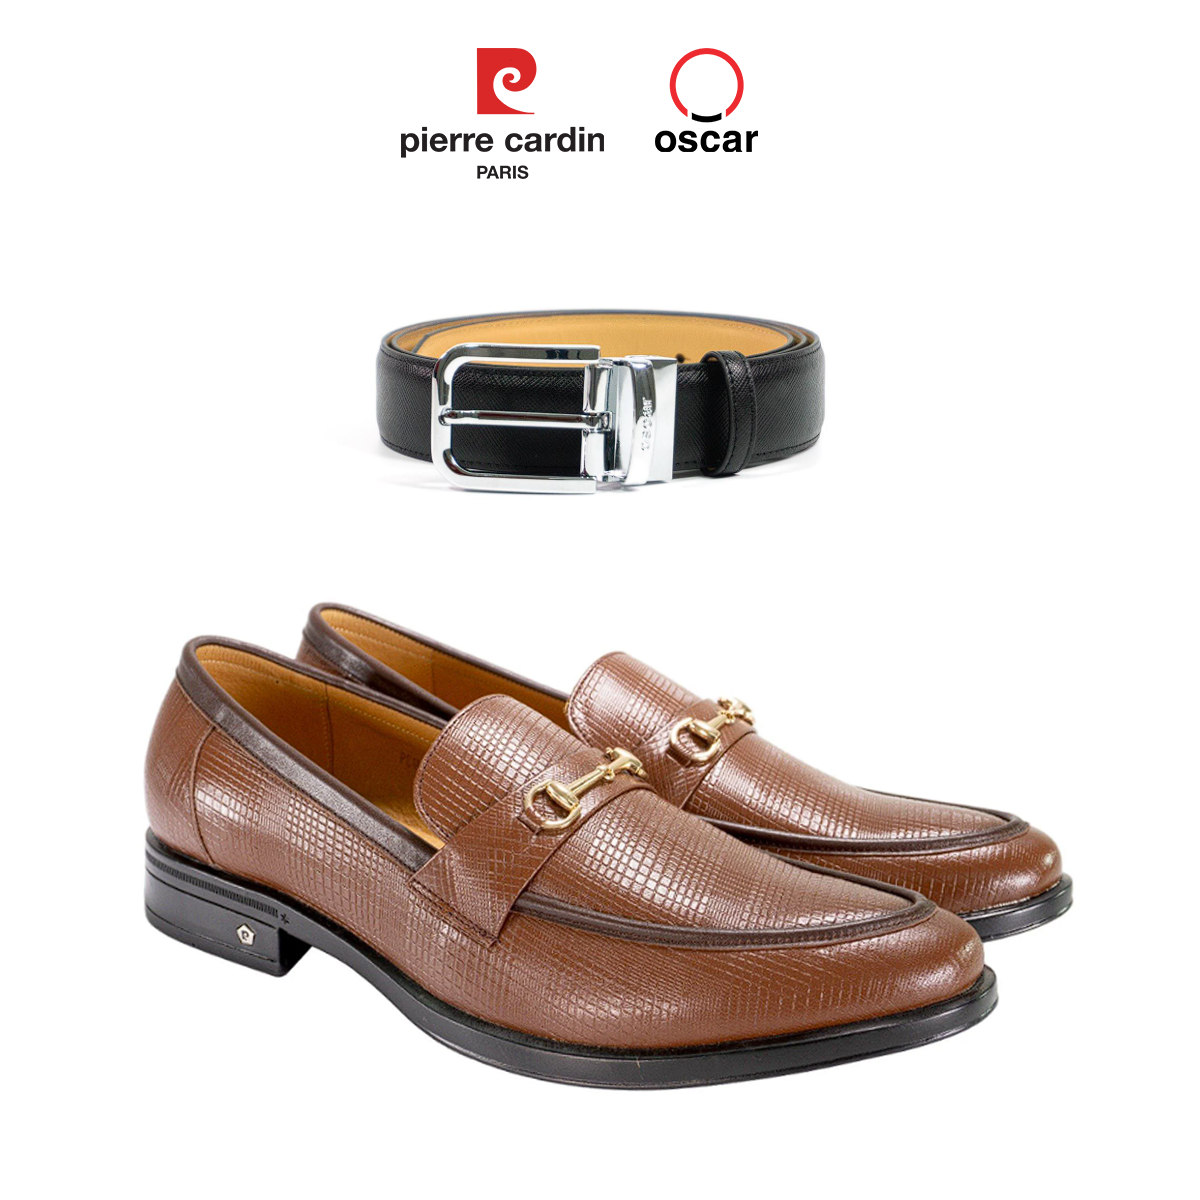 Gợi ý phối đồ giữa mẫu thắt lưng Oscar Fashion - OCMBLPG 026 và mẫu giày Horsebit Loafer Pierre Cardin - PCMFWLG 700.